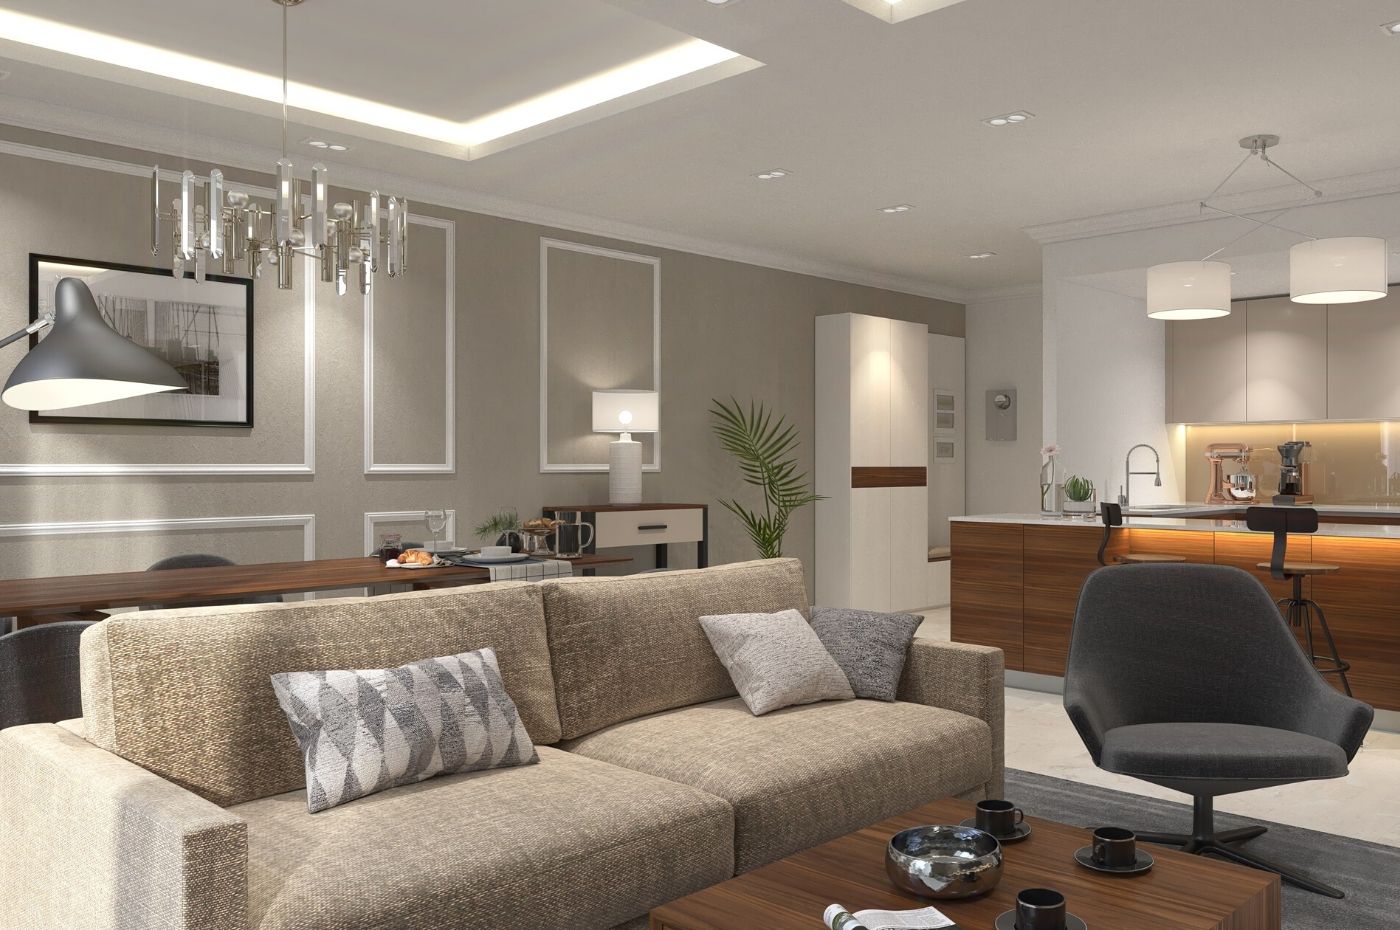 Thiết kế nội thất phòng khách sang trọng theo 8 nguyên tắc cơ bản